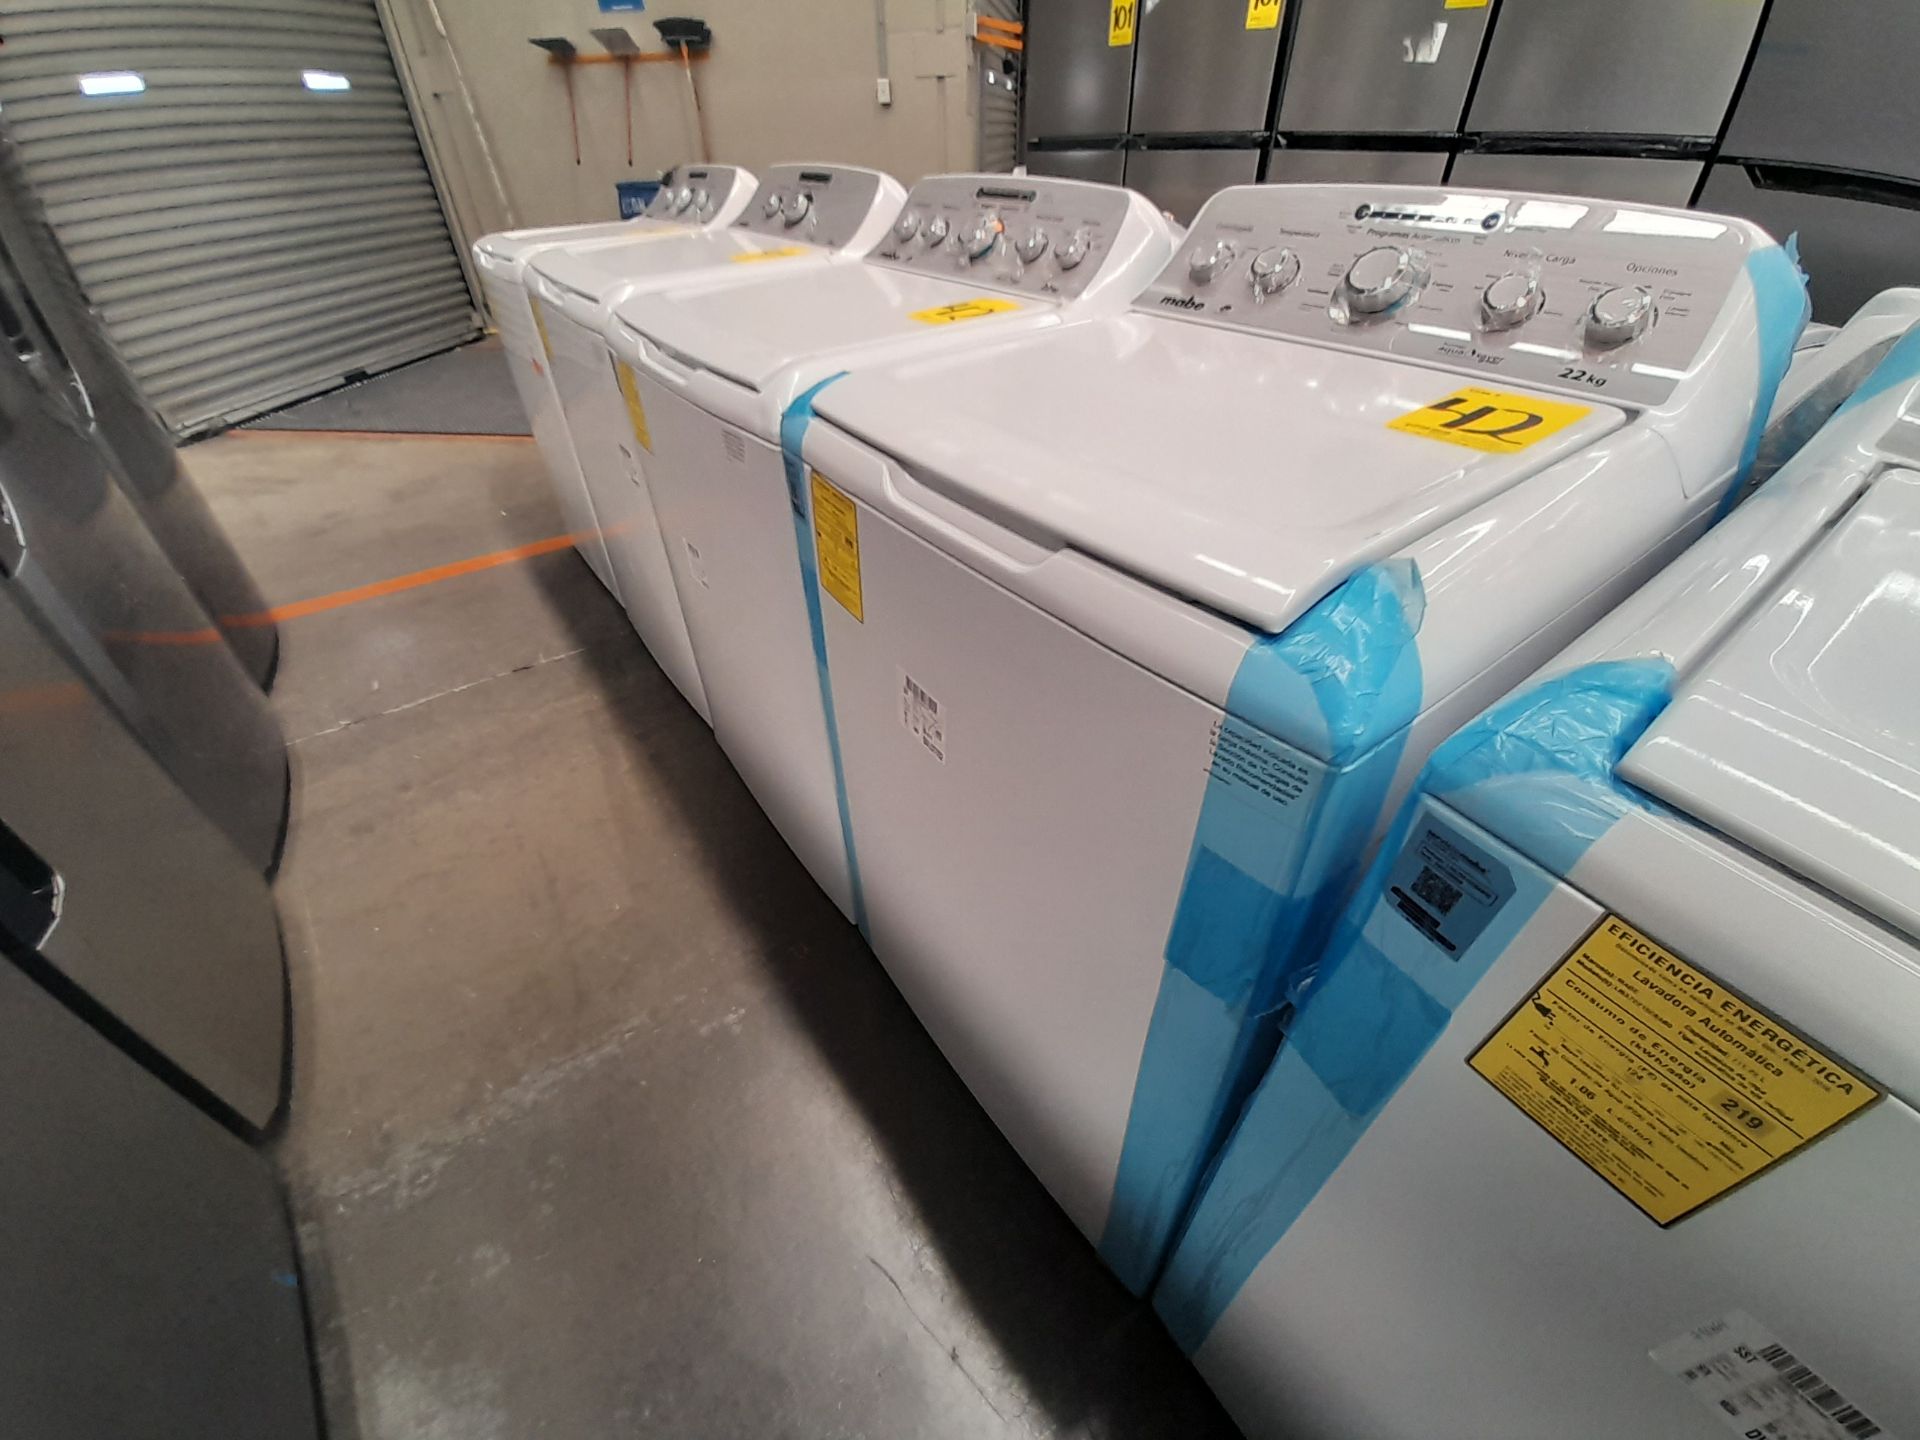 Lote de 2 lavadoras contiene: 1 lavadora de 22 KG, Marca MABE, Modelo LMA72215CBAB02, Serie S02700, - Image 2 of 6